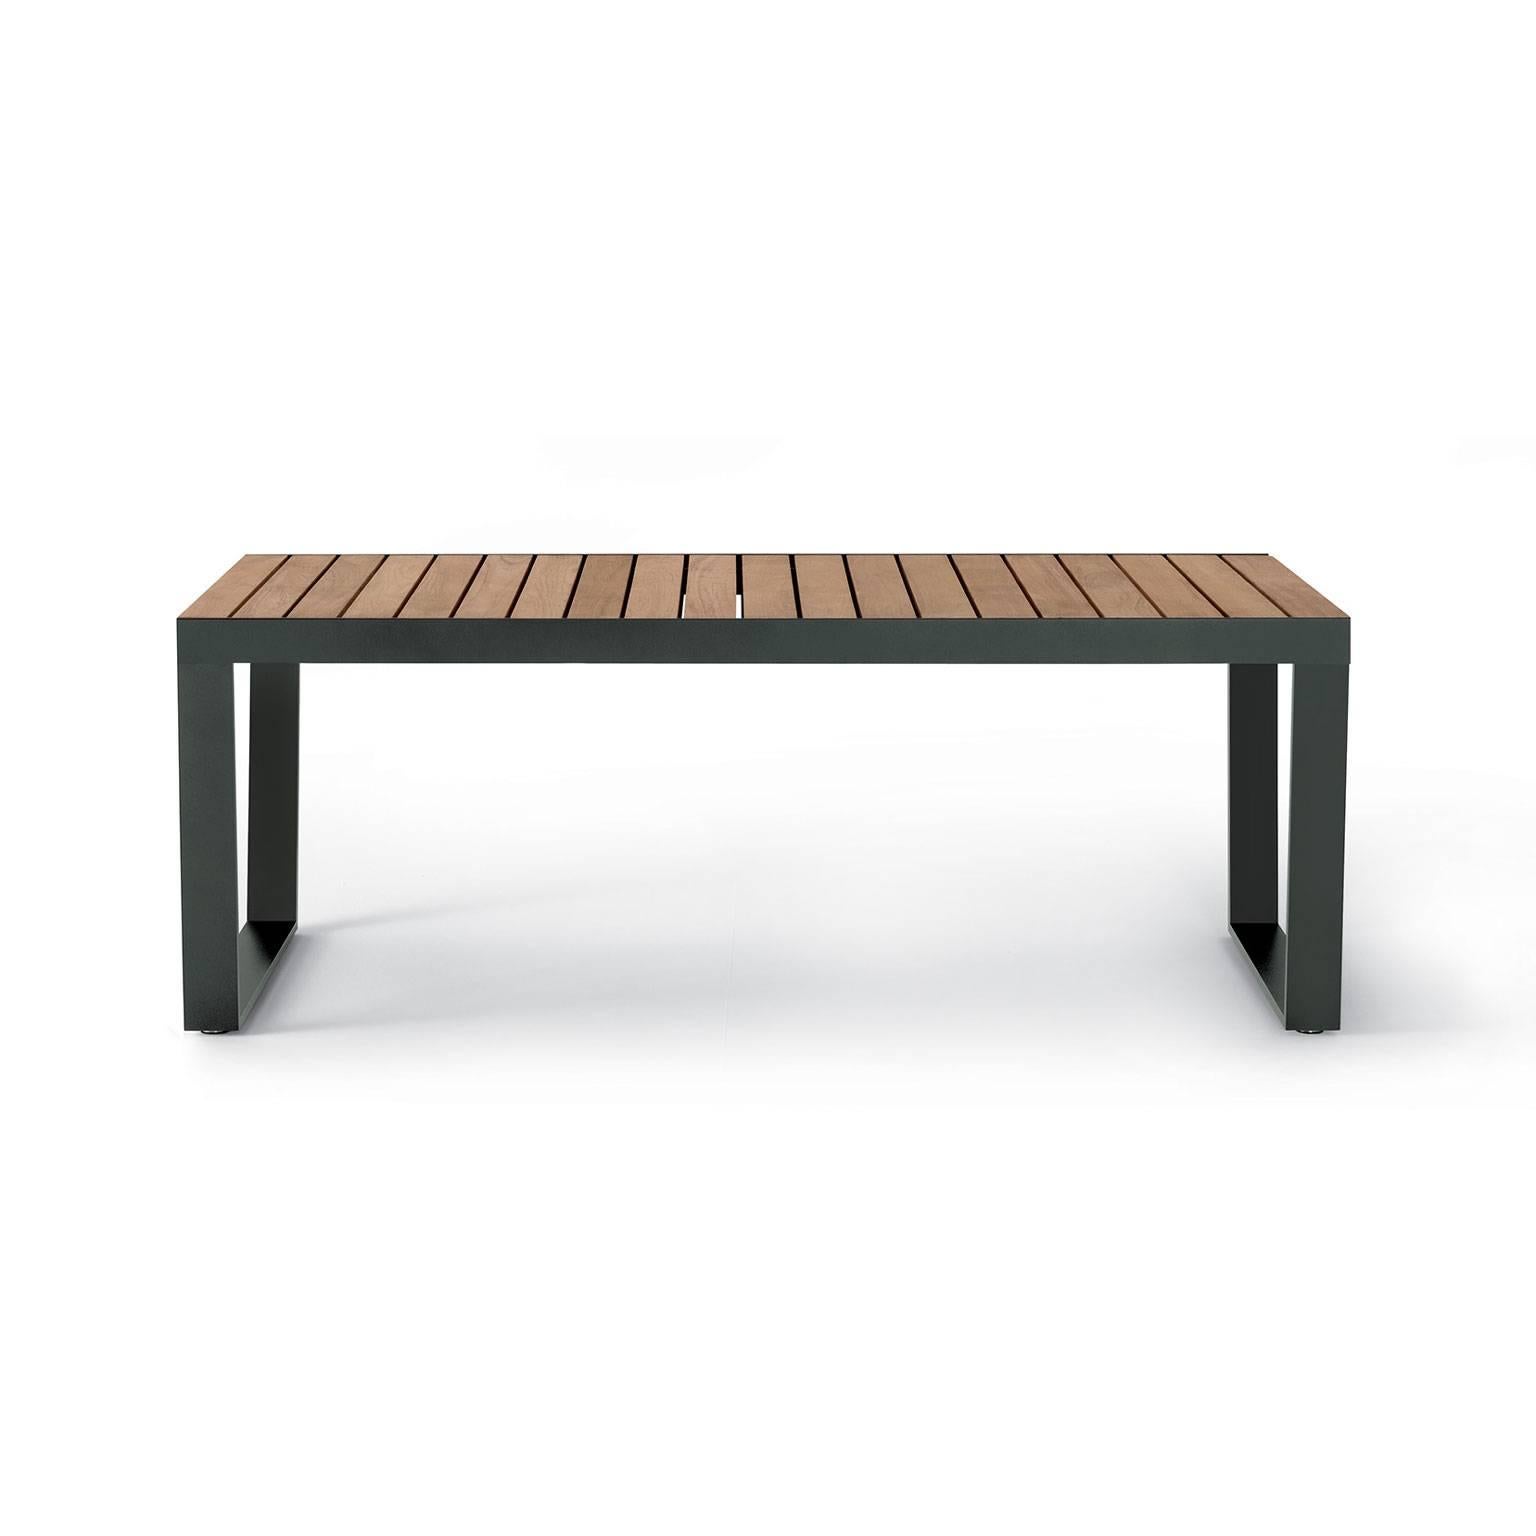 La table d'extérieur à rallonge exclusive Spinnaker tire sa puissance expressive d'un design sévère et extrêmement moderne, qui met simultanément en valeur la solidité du matériau et la légèreté du plateau.
Pouvant accueillir jusqu'à 12 personnes